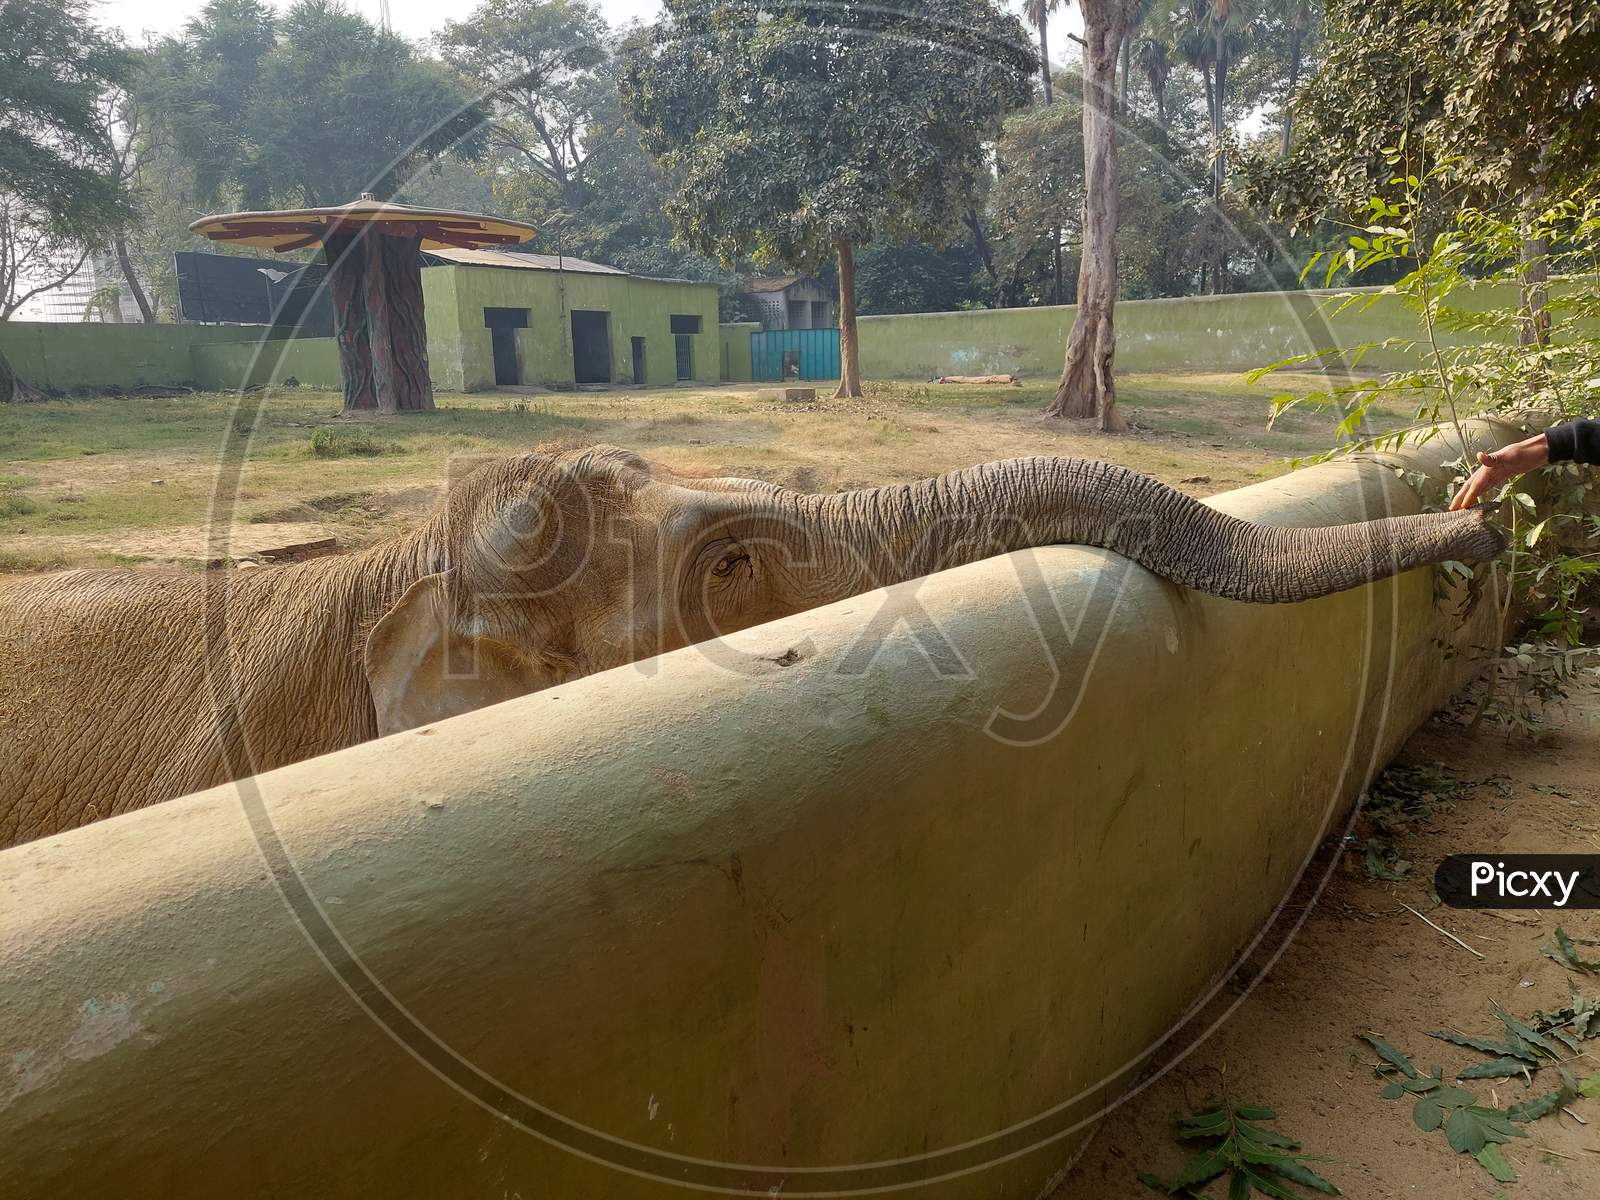 zoo elephant